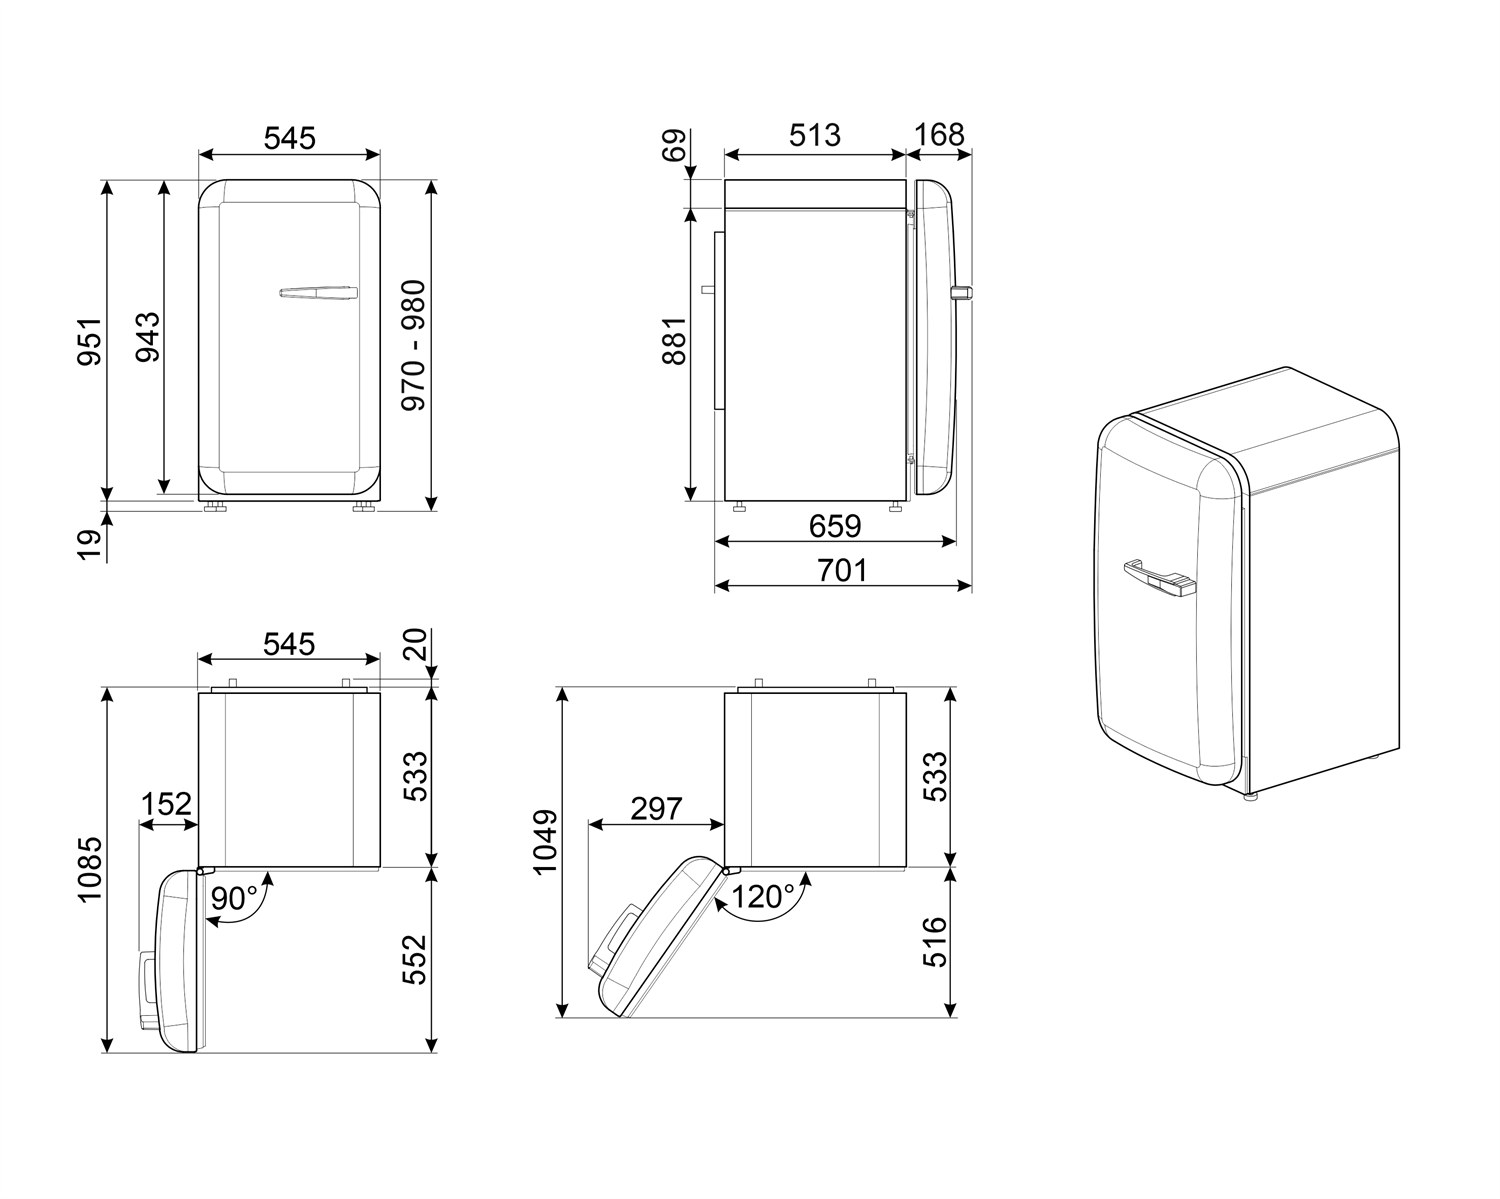 Maattekening SMEG koelkast tafelmodel rood FAB10LRD5